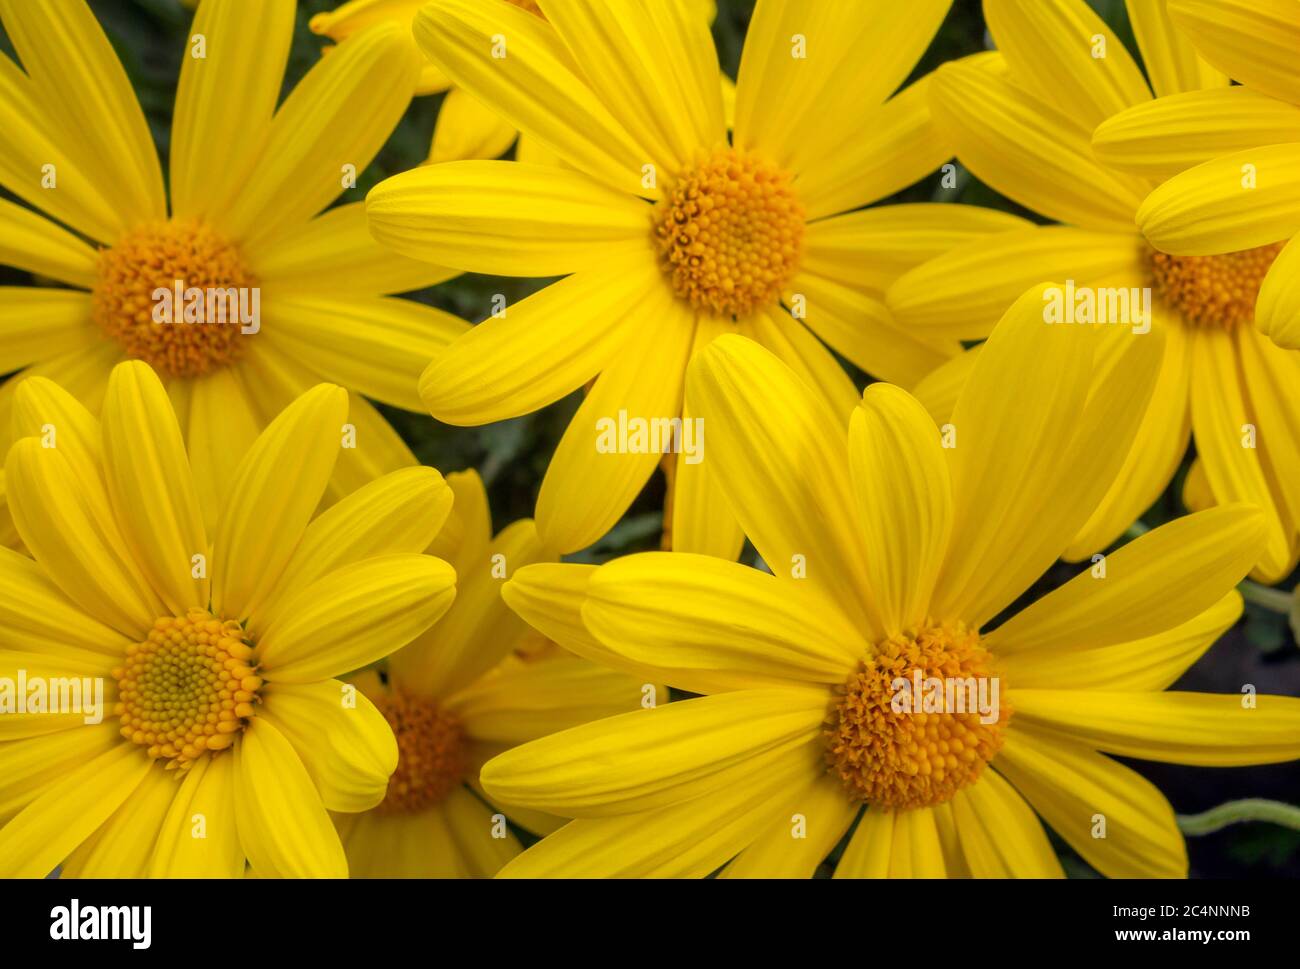 closeup shot of some bright yellow chrysanthemum flowers Stock Photo